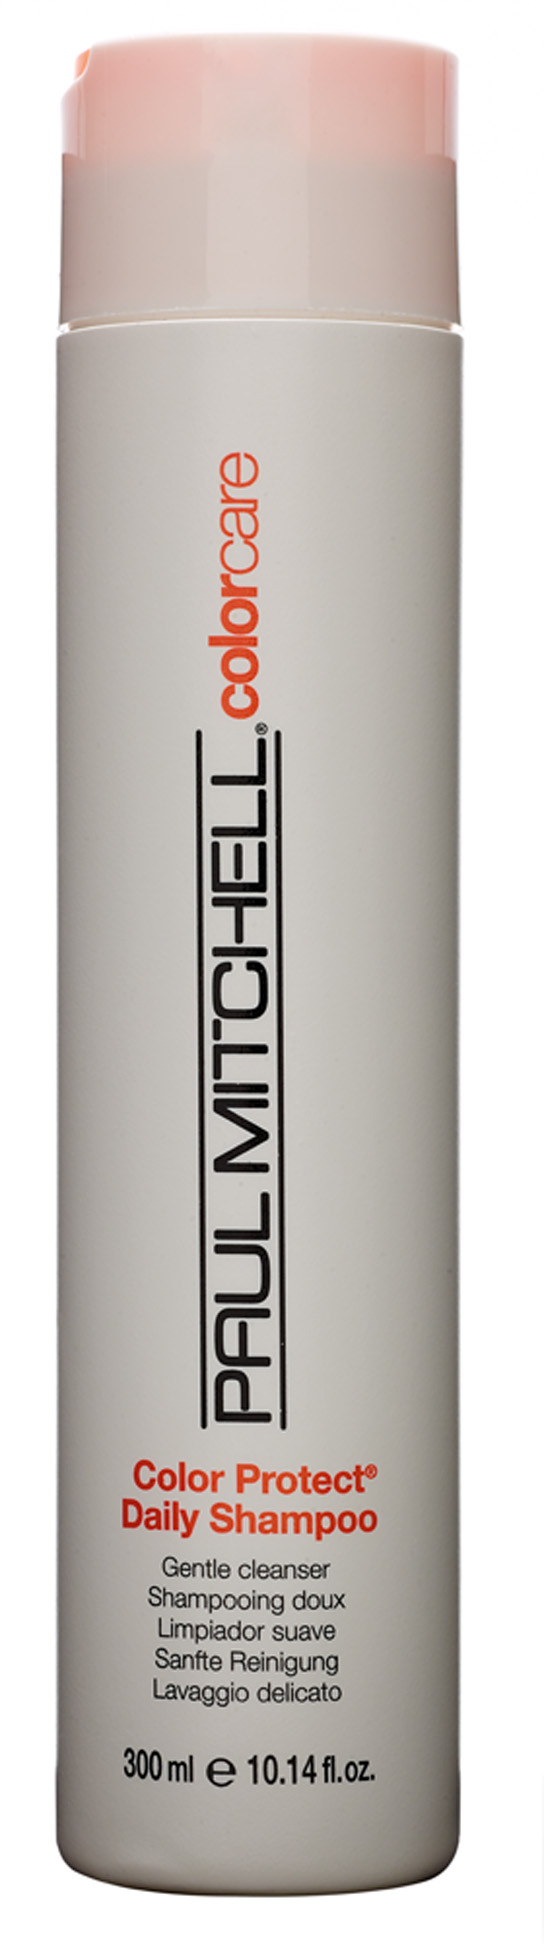 10. Color Protect Daily Shampoo, R$ 43,50:  dá força e elasticidade aos cabelos, protegendo-os dos raios solares. Paul Mitchell (11) 5188-0088